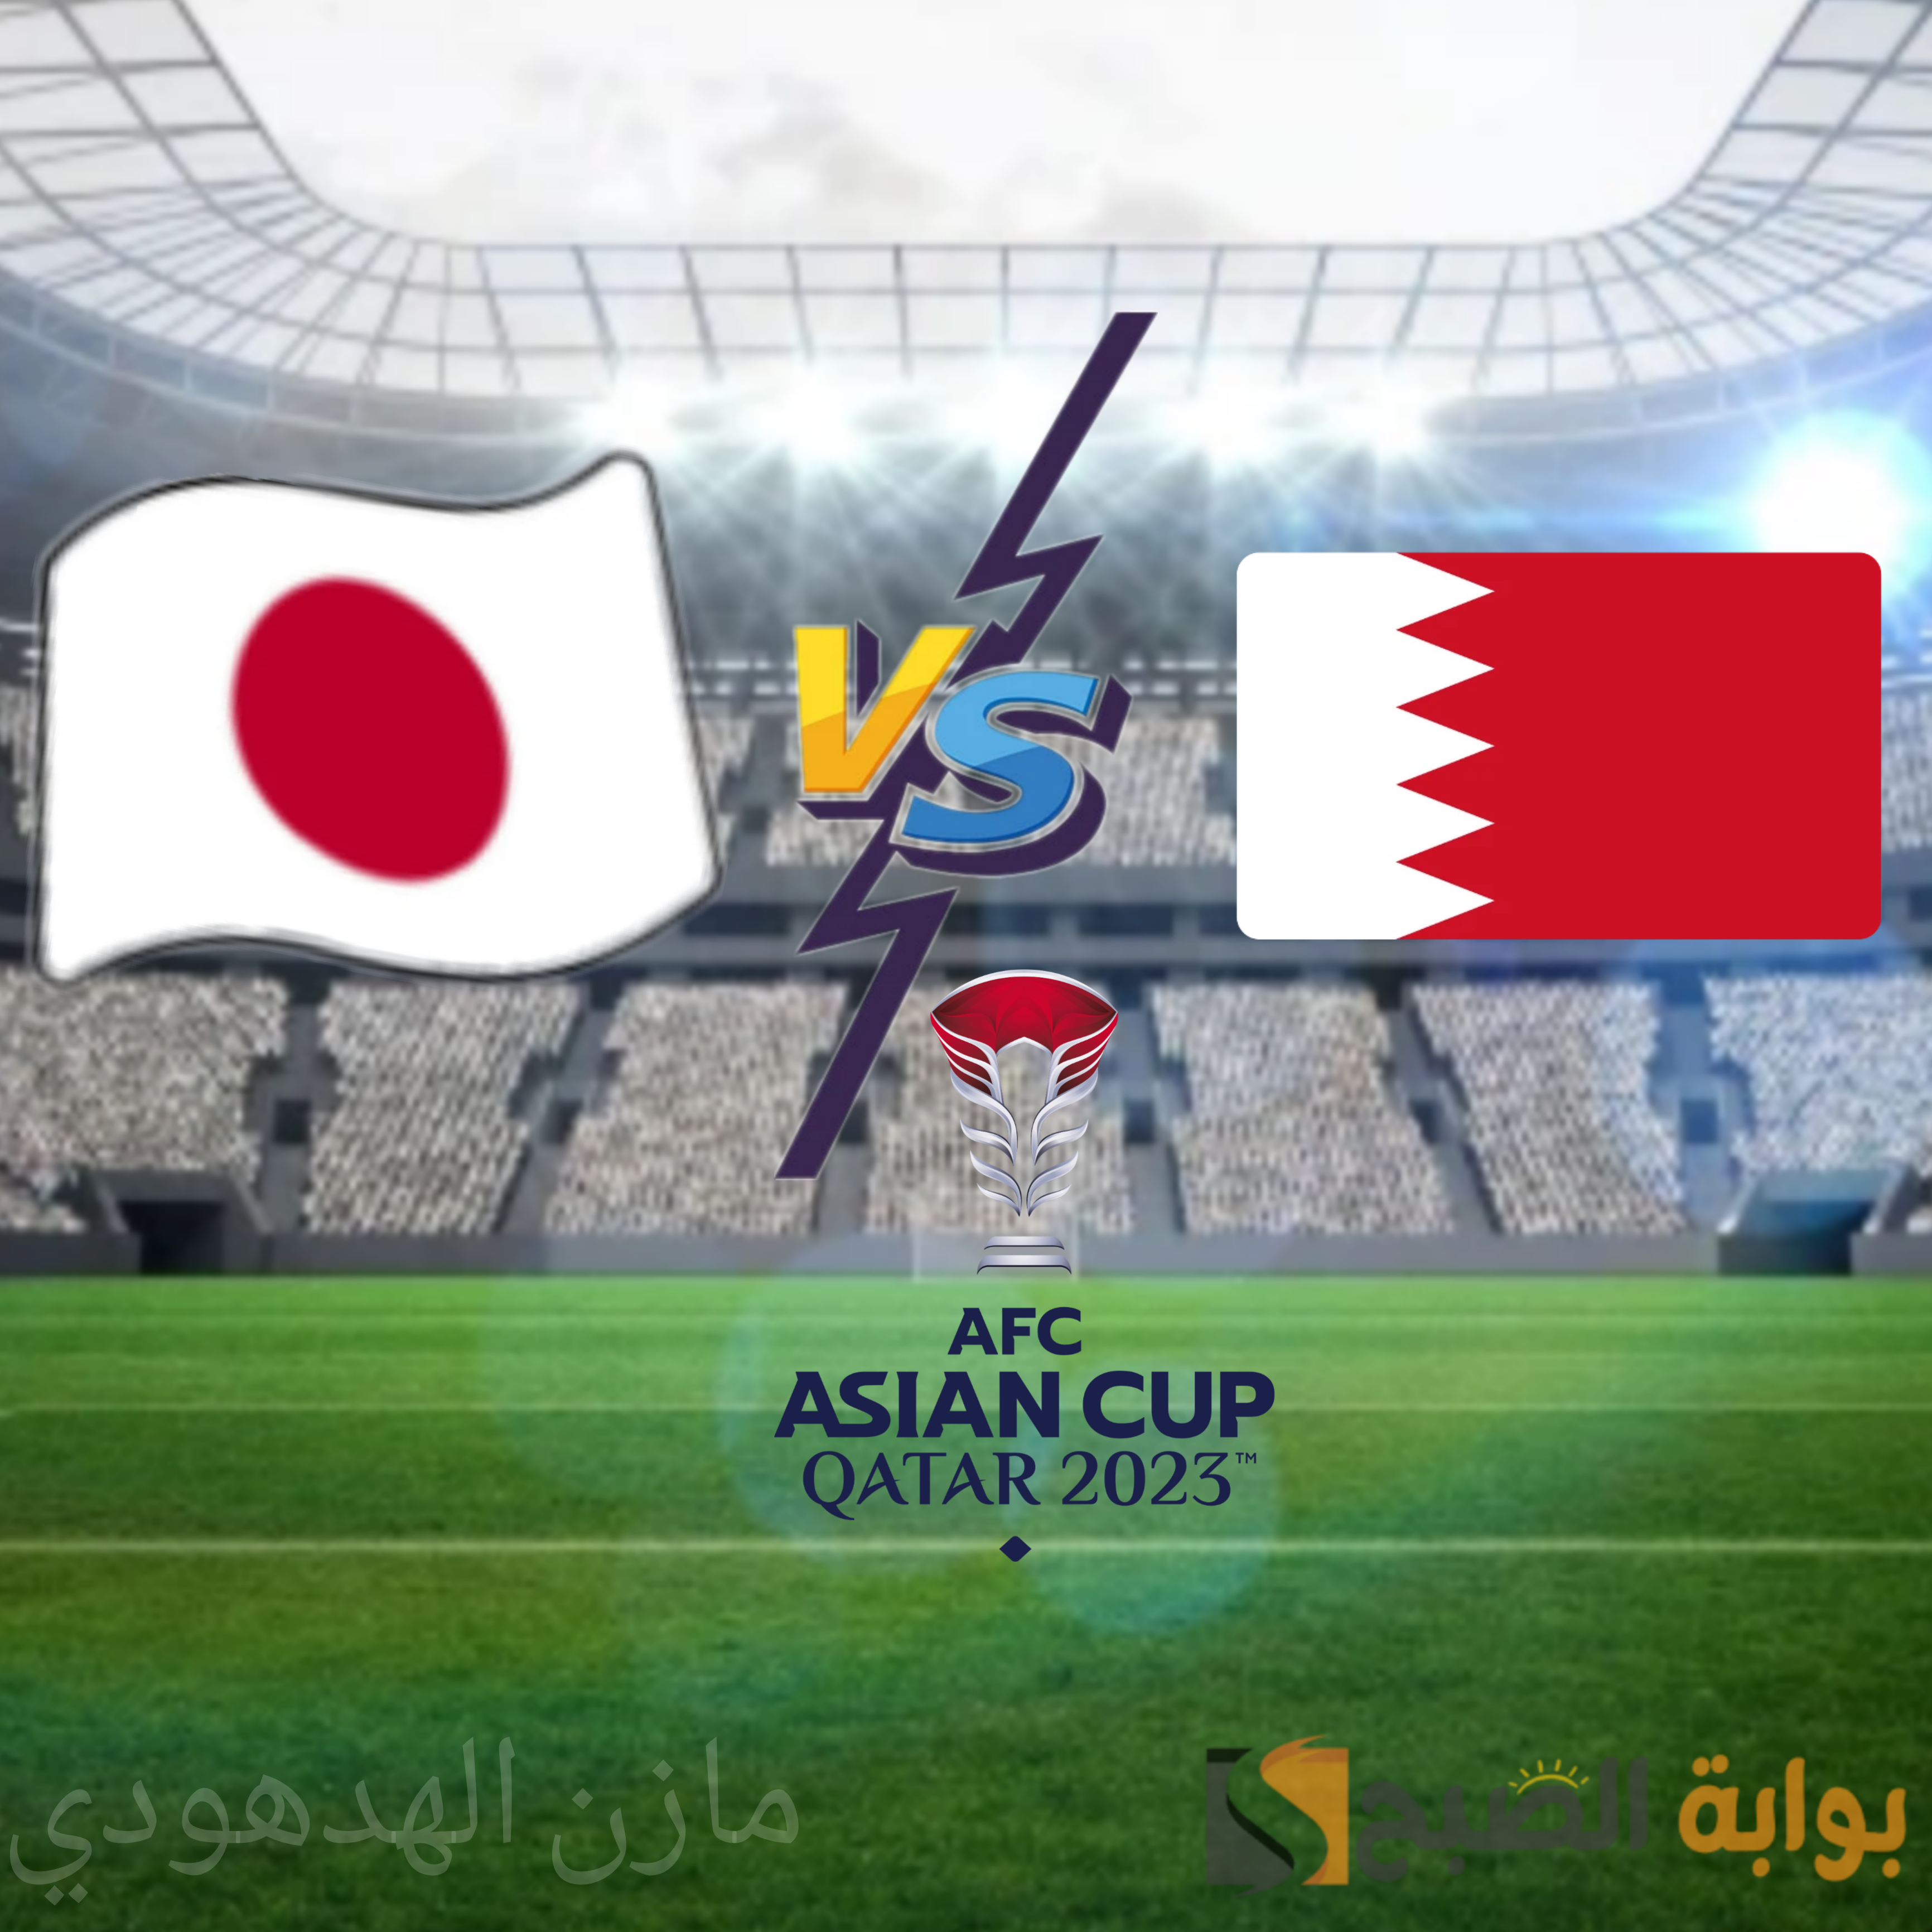 ملخص مباراة البحرين ضد اليابان اليوم في دور 16 من كأس أسيا 2023